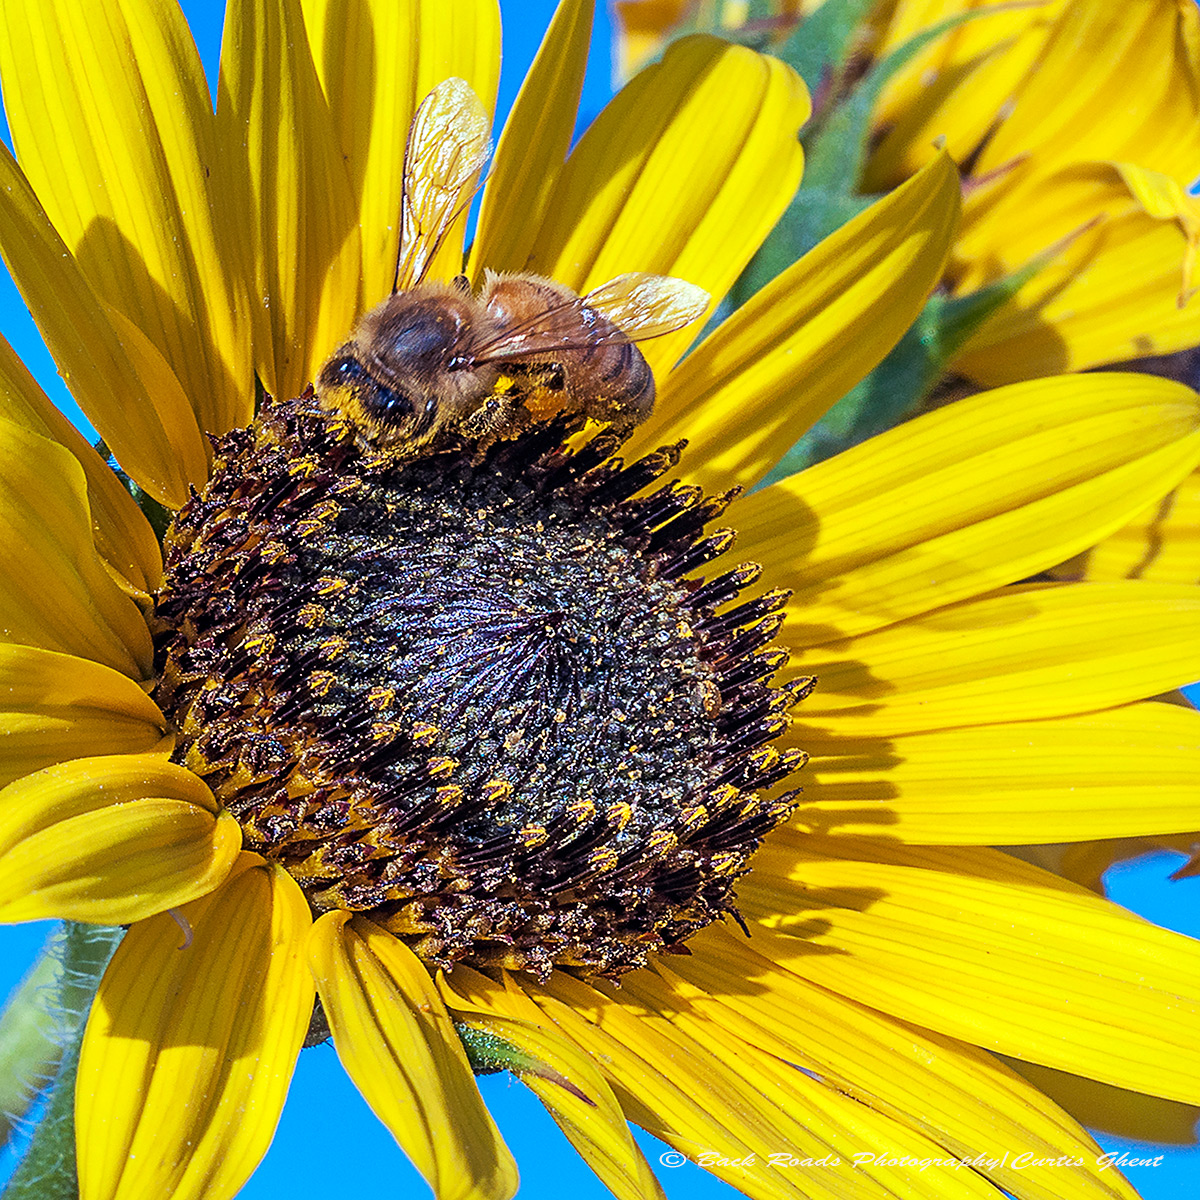 A honey bee tending a sunflower.